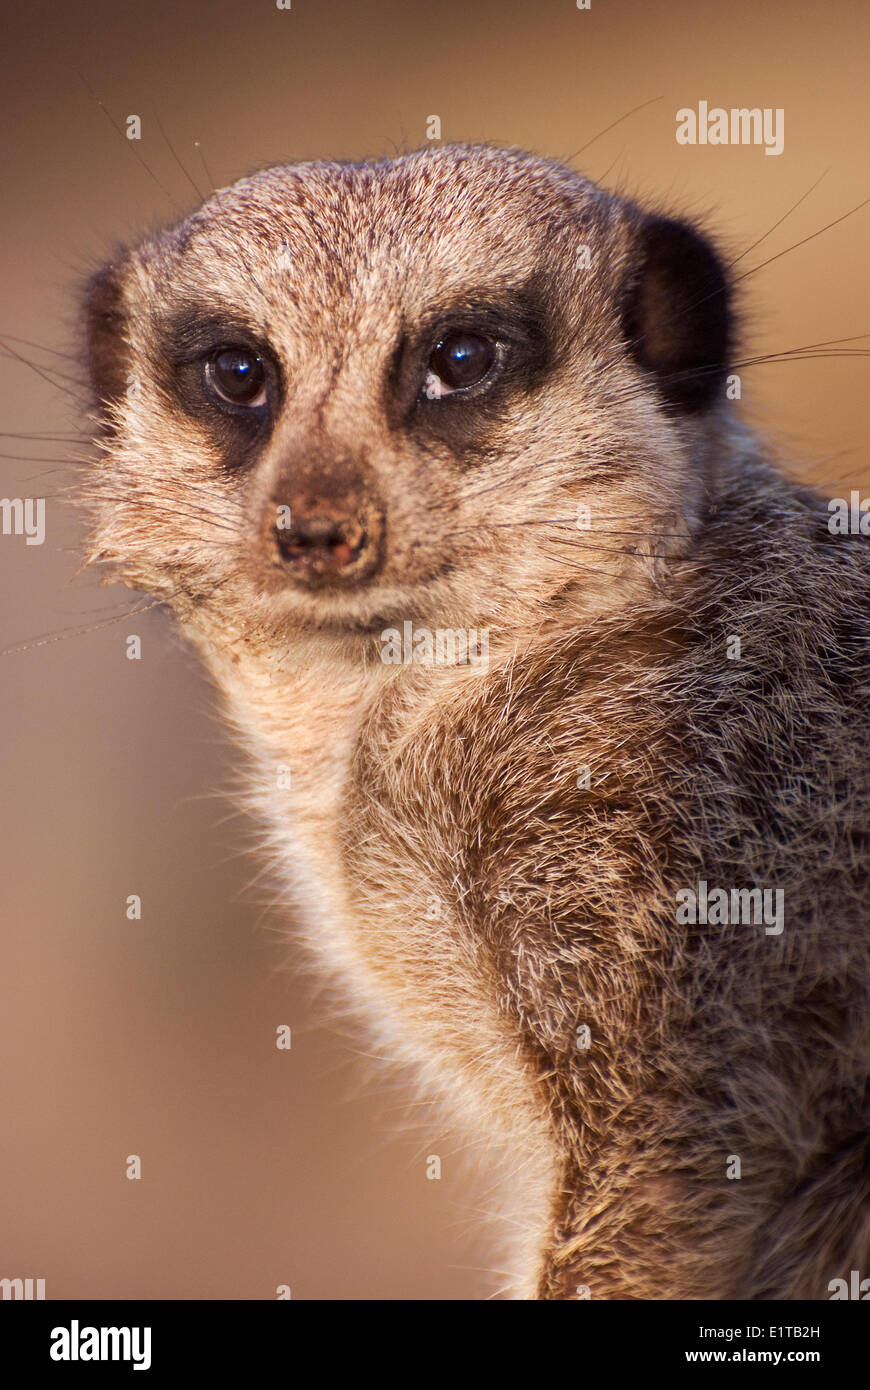 Ritratto di meerkat nella calda luce della sera Foto Stock